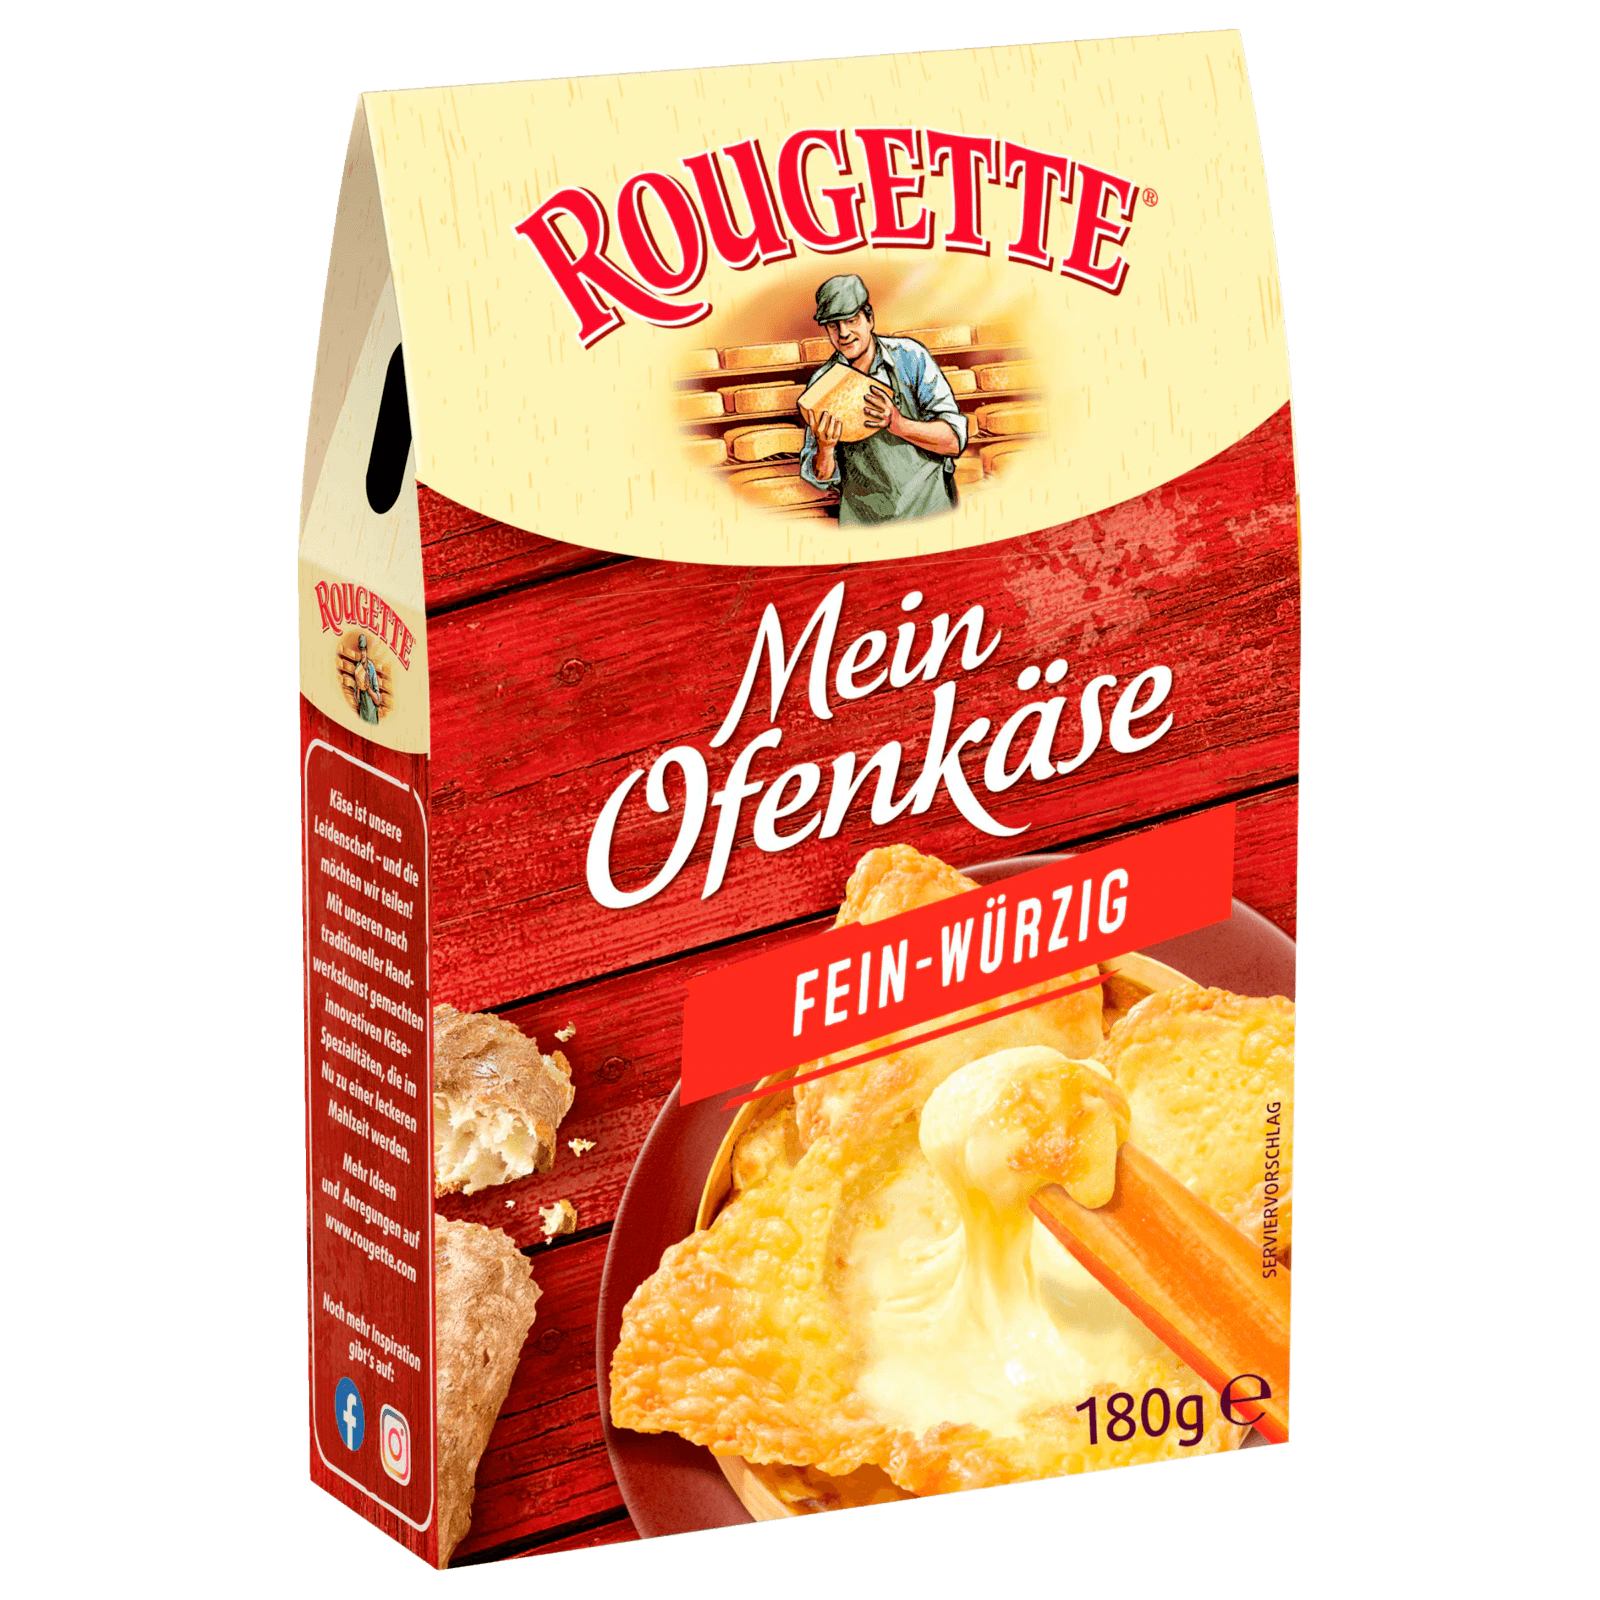 Rougette Der kleine Ofenkäse fein-würzig bestellen! online 180g REWE bei